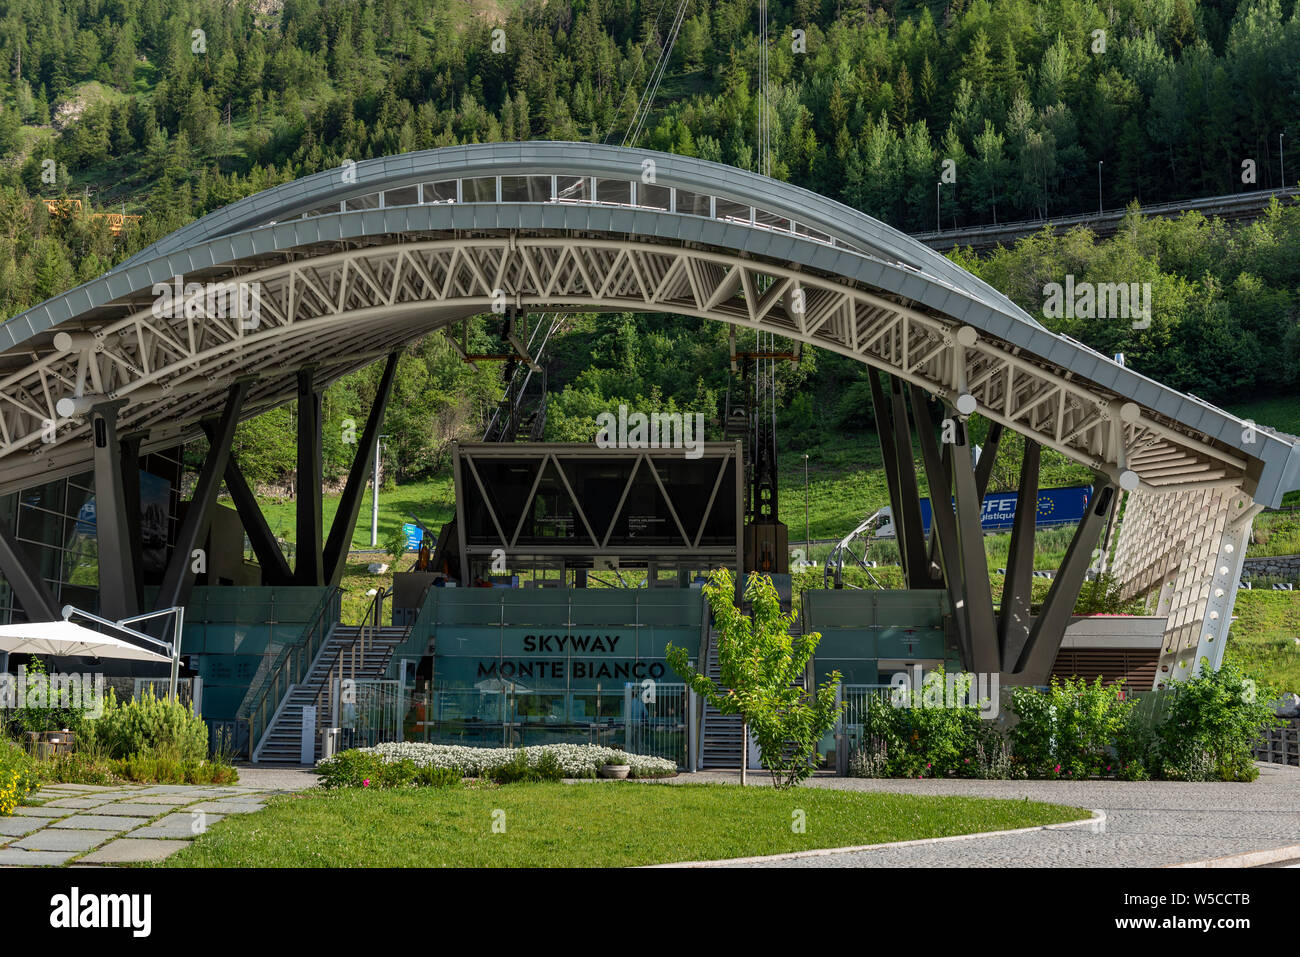 Gare du funiculaire (Skyway Monte Bianco) sur le versant italien du massif du Mont Blanc. Le Skyway relie le village de Courmayeur à Pointe Helbr Banque D'Images